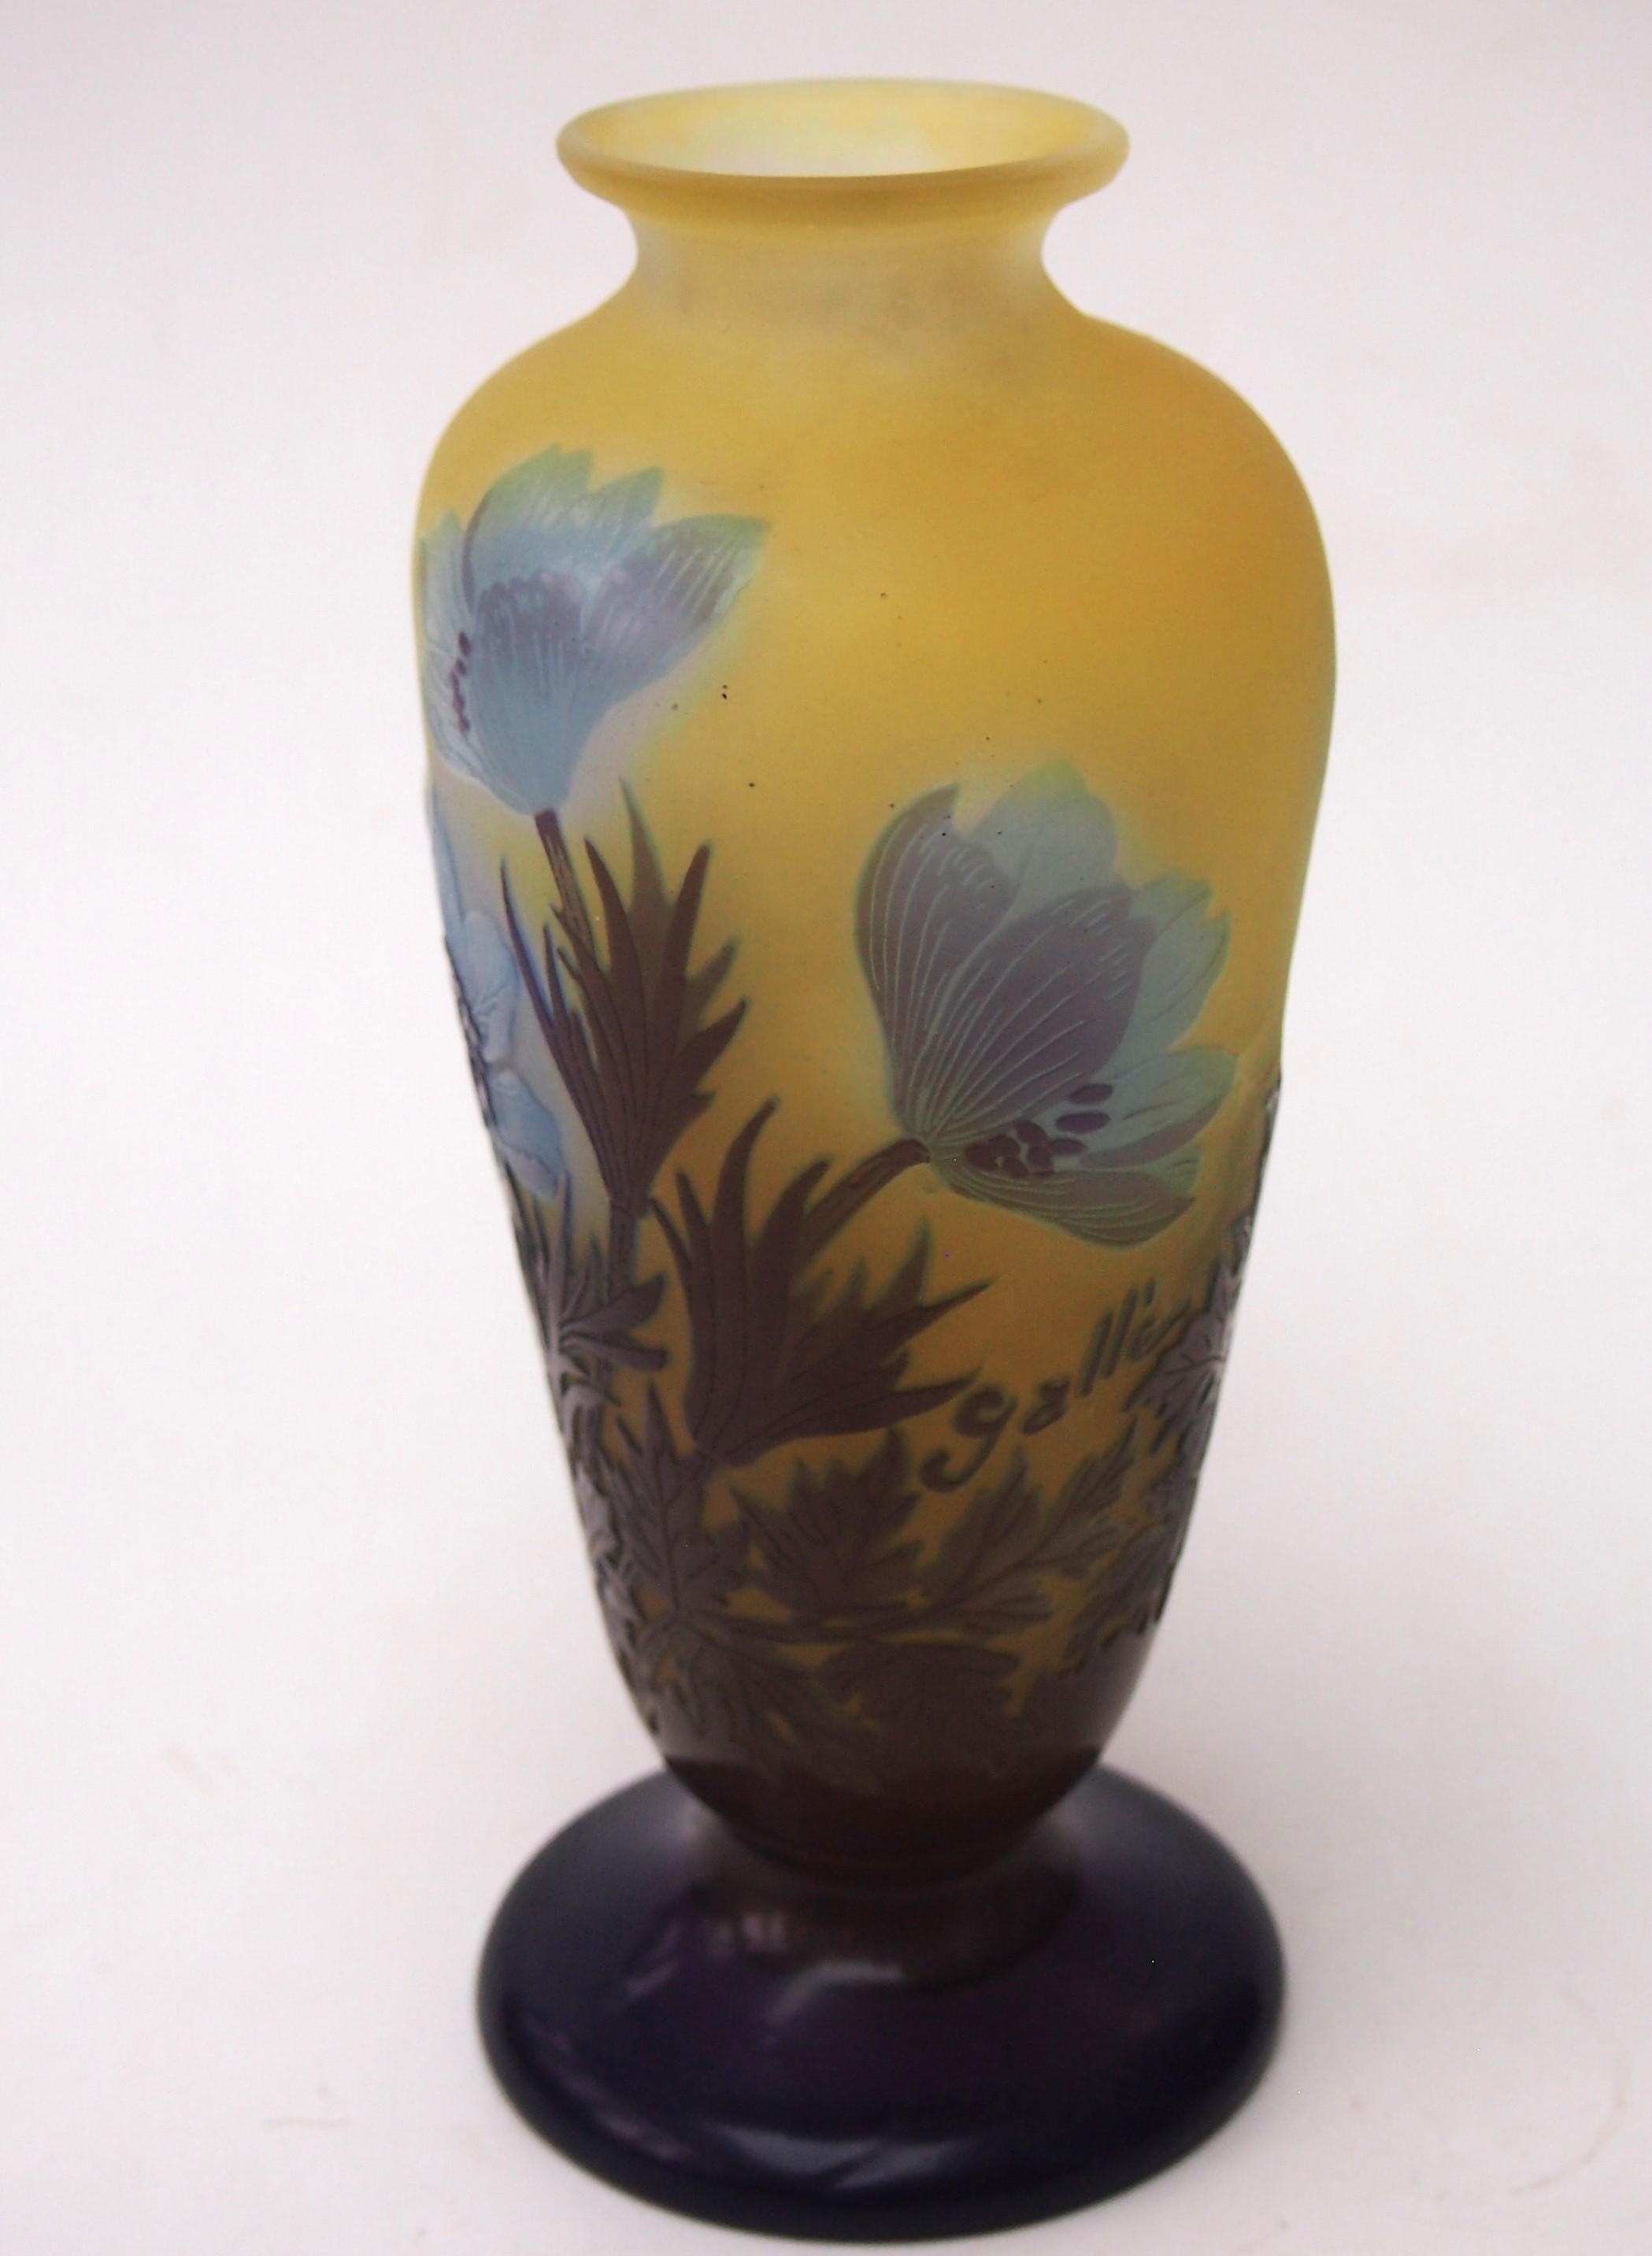 Vase à pied Emile Gallé Art Nouveau représentant une anémone fleurie en violet et bleu sur fond orange/jaune, avec un fin polissage interne pour mettre en valeur le bleu des fleurs - Une forme frappante et inhabituelle - là où le polissage interne